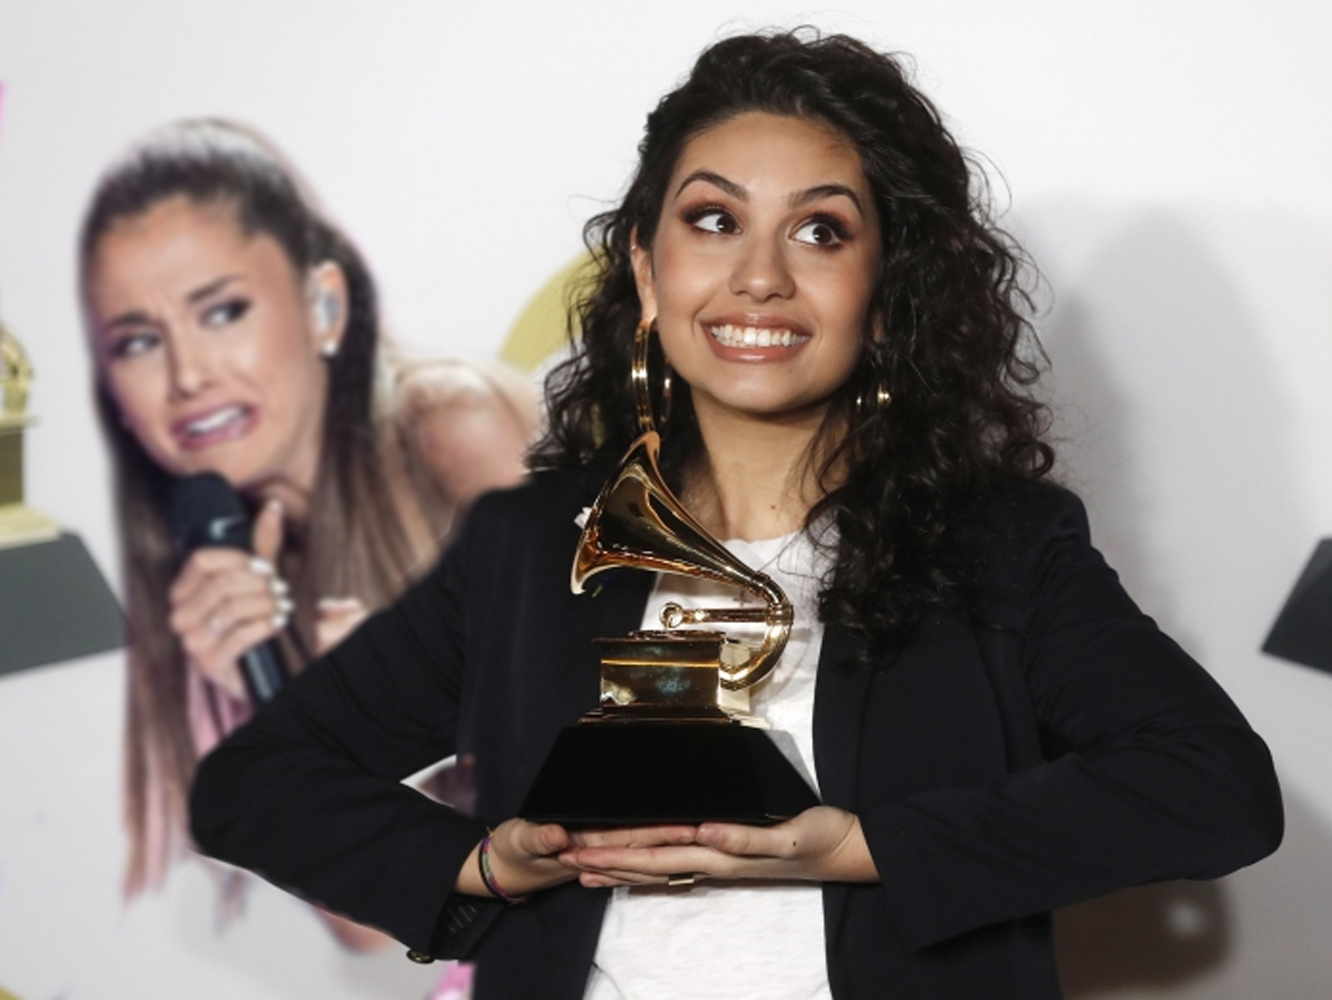  El Grammy Gafe: por qué debería desaparecer el Grammy a Mejor Nuevo Artista